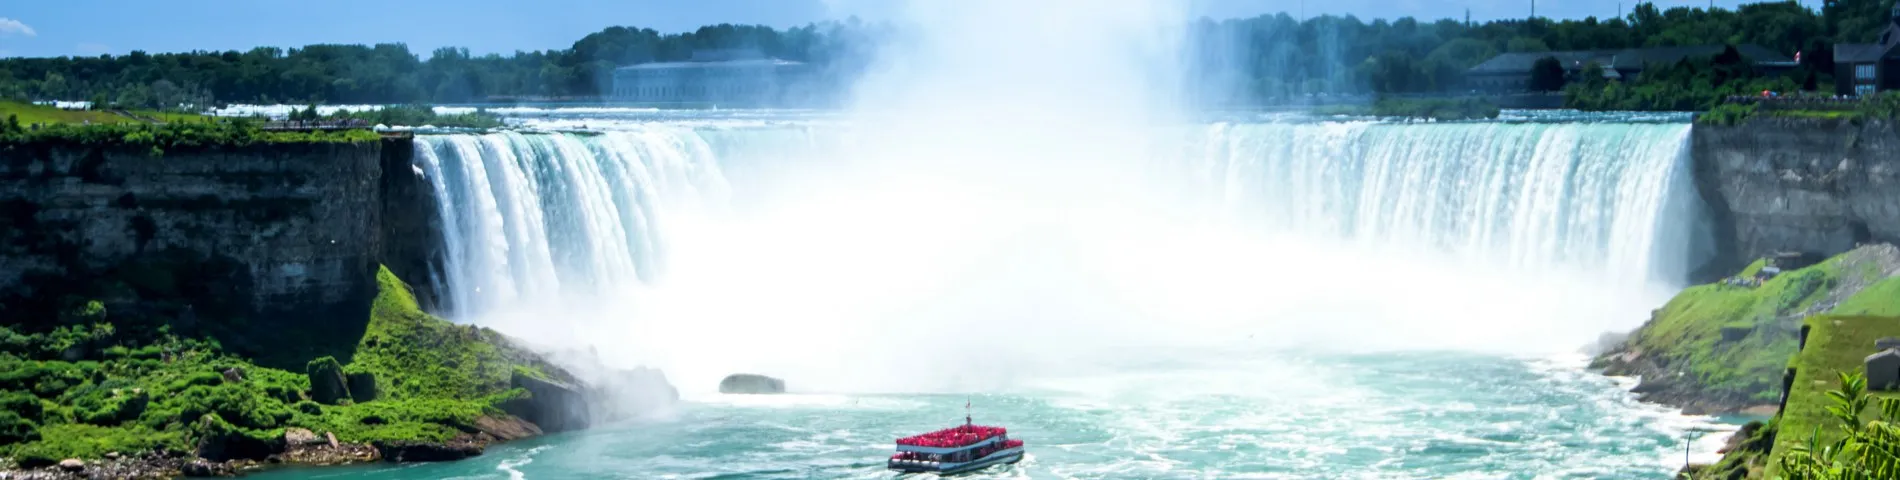 웰랜드(나이아가라 폭포) - Welland (Niagara Falls)